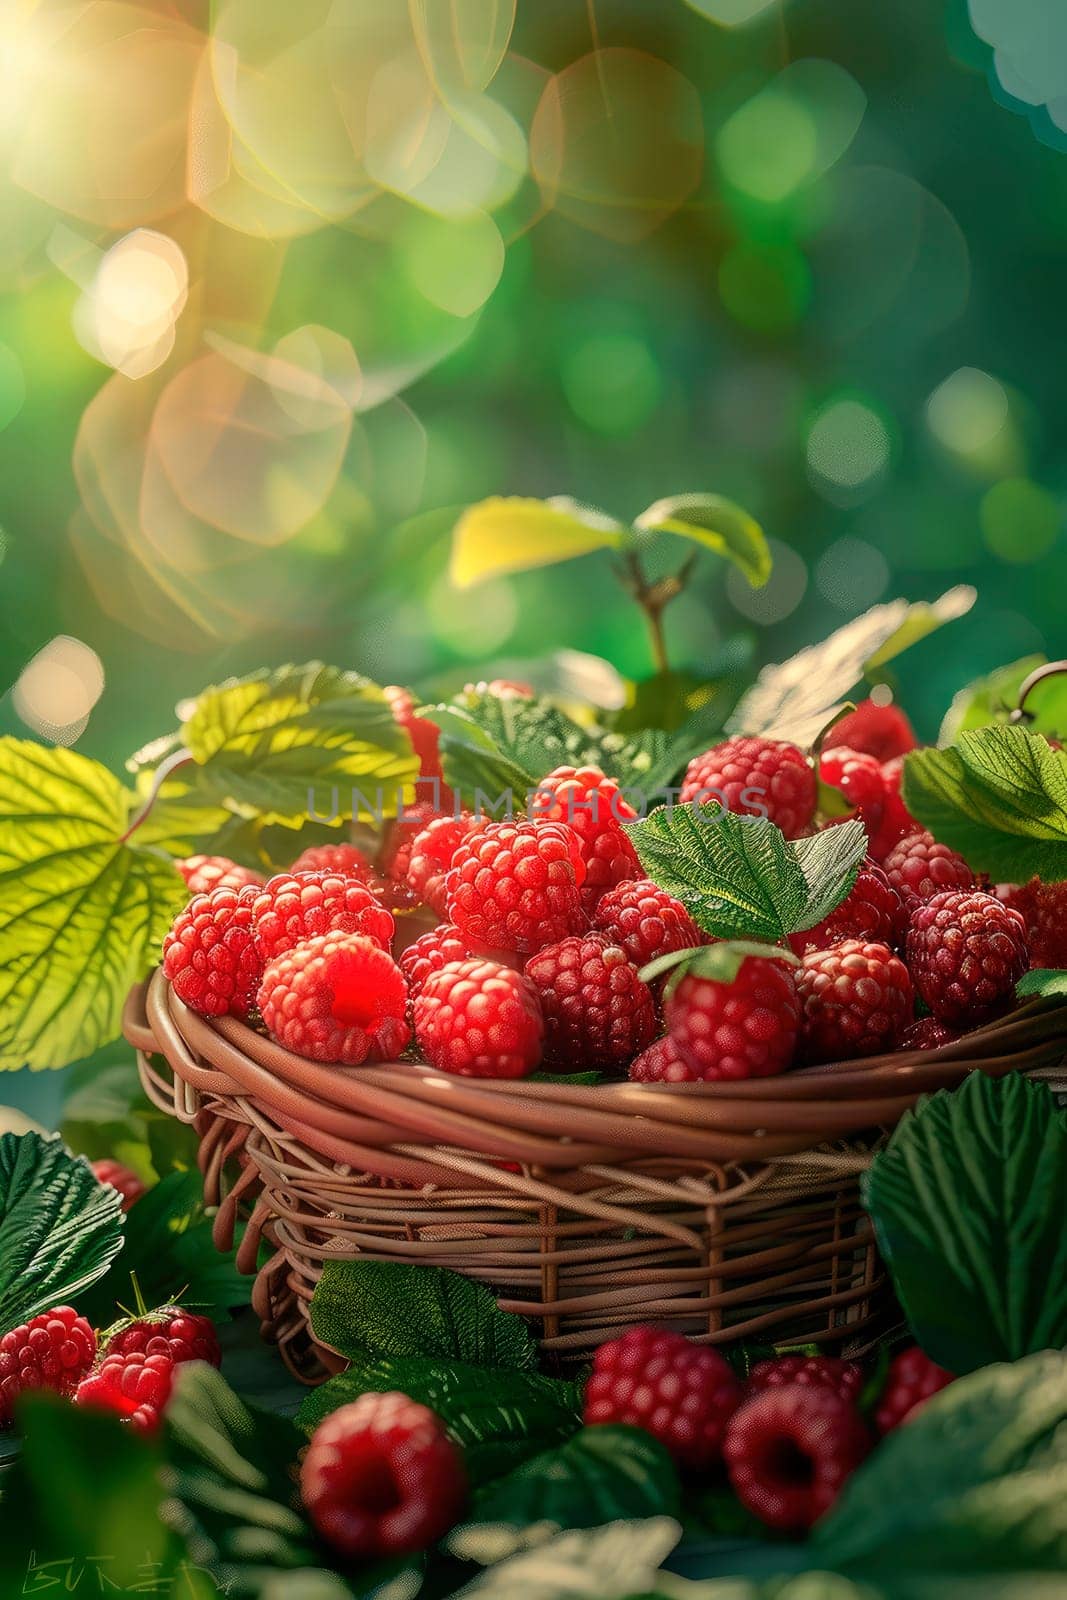 raspberries in a basket in the garden. selective focus. food.